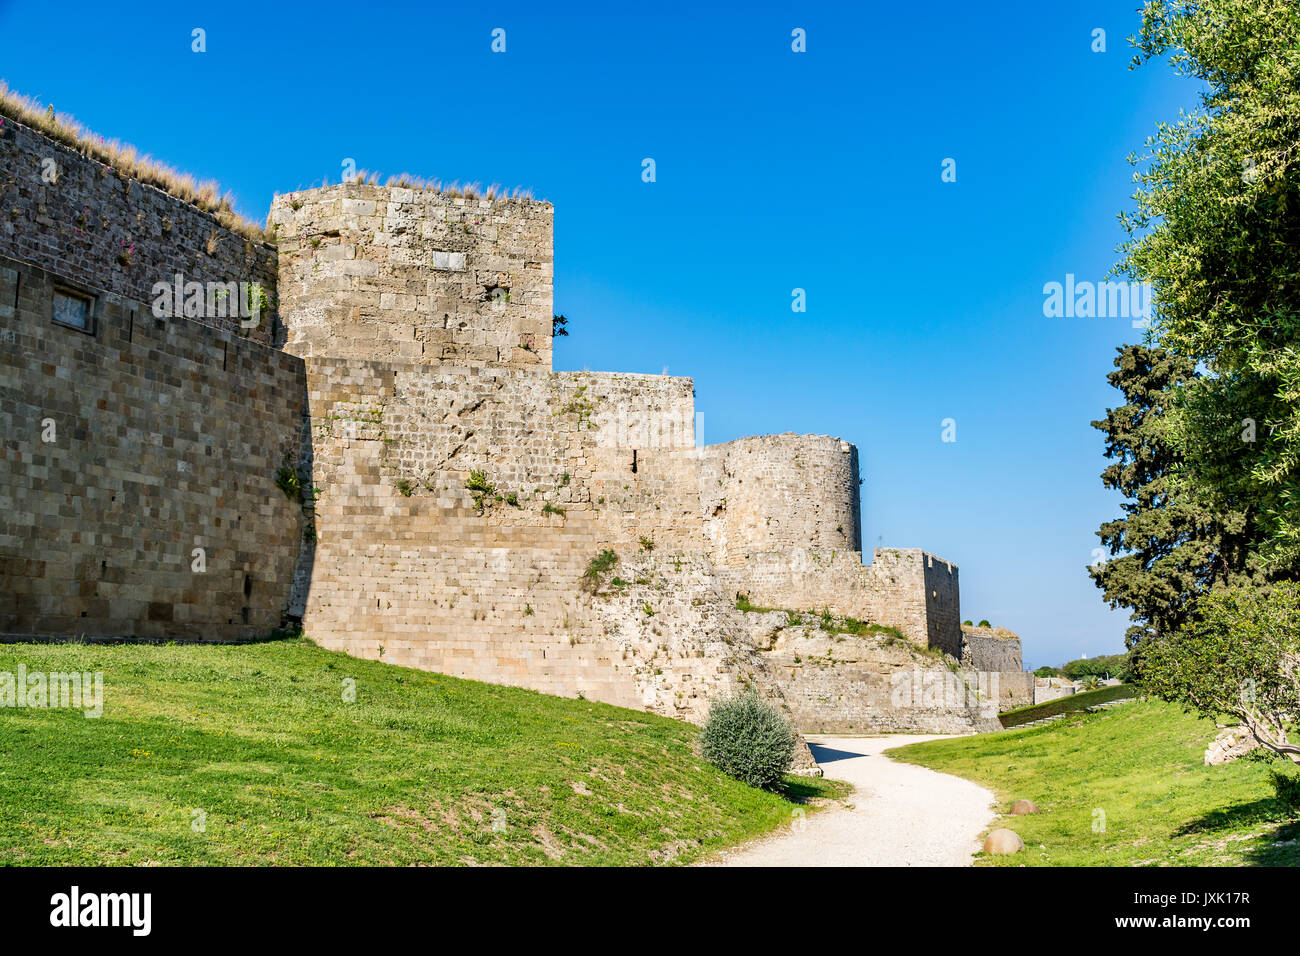 Erstaunlich Mauern der Altstadt von Rhodos, die Insel Rhodos, Griechenland Stockfoto